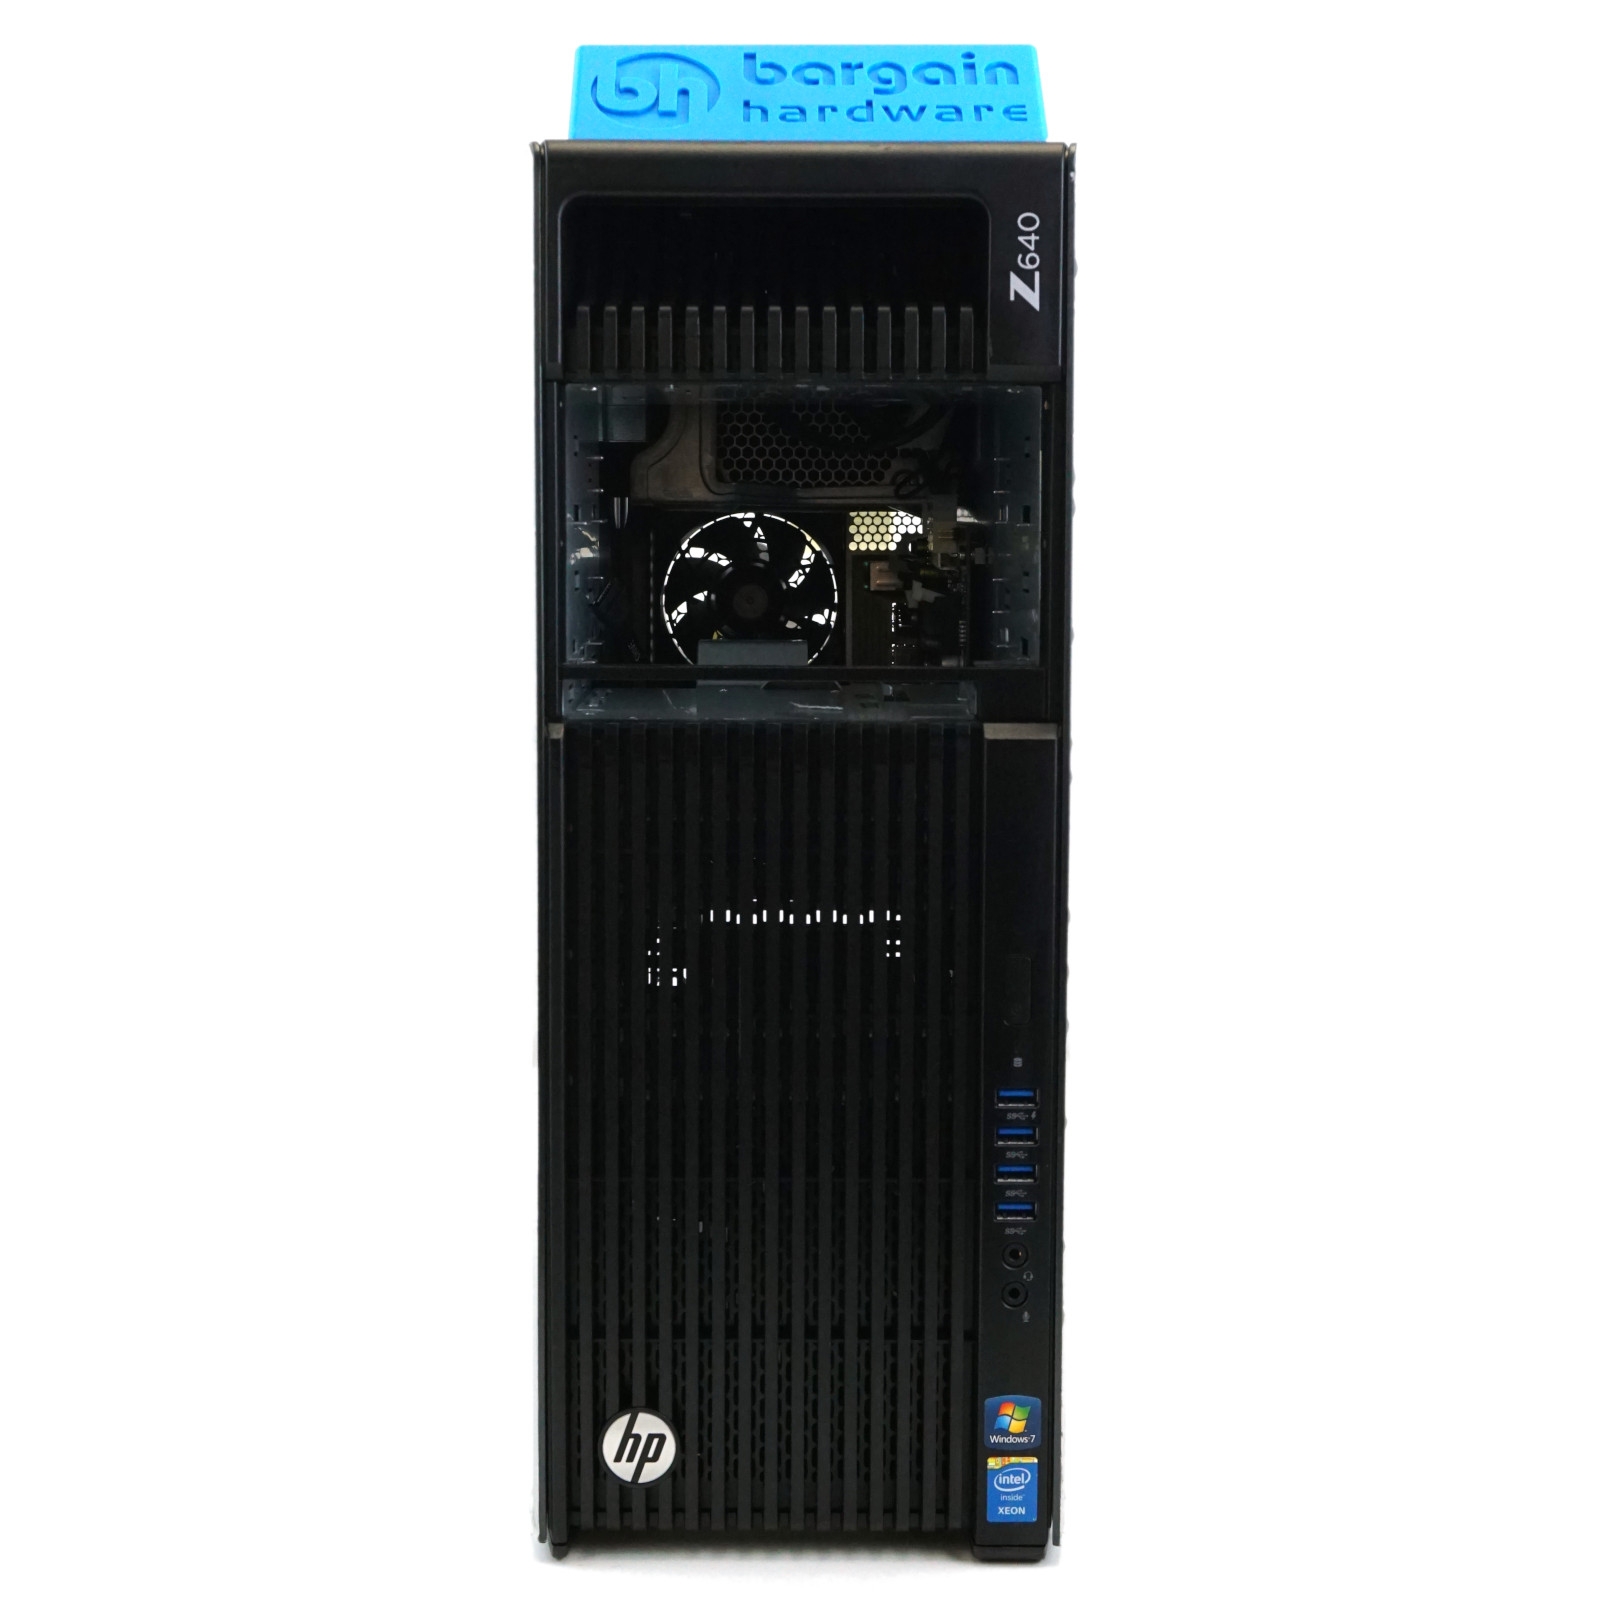 Configure: HP Z640 Xeon 1x Xeon E5-2680 V4 14C 64GB DDR4 RAM Editing Workstation